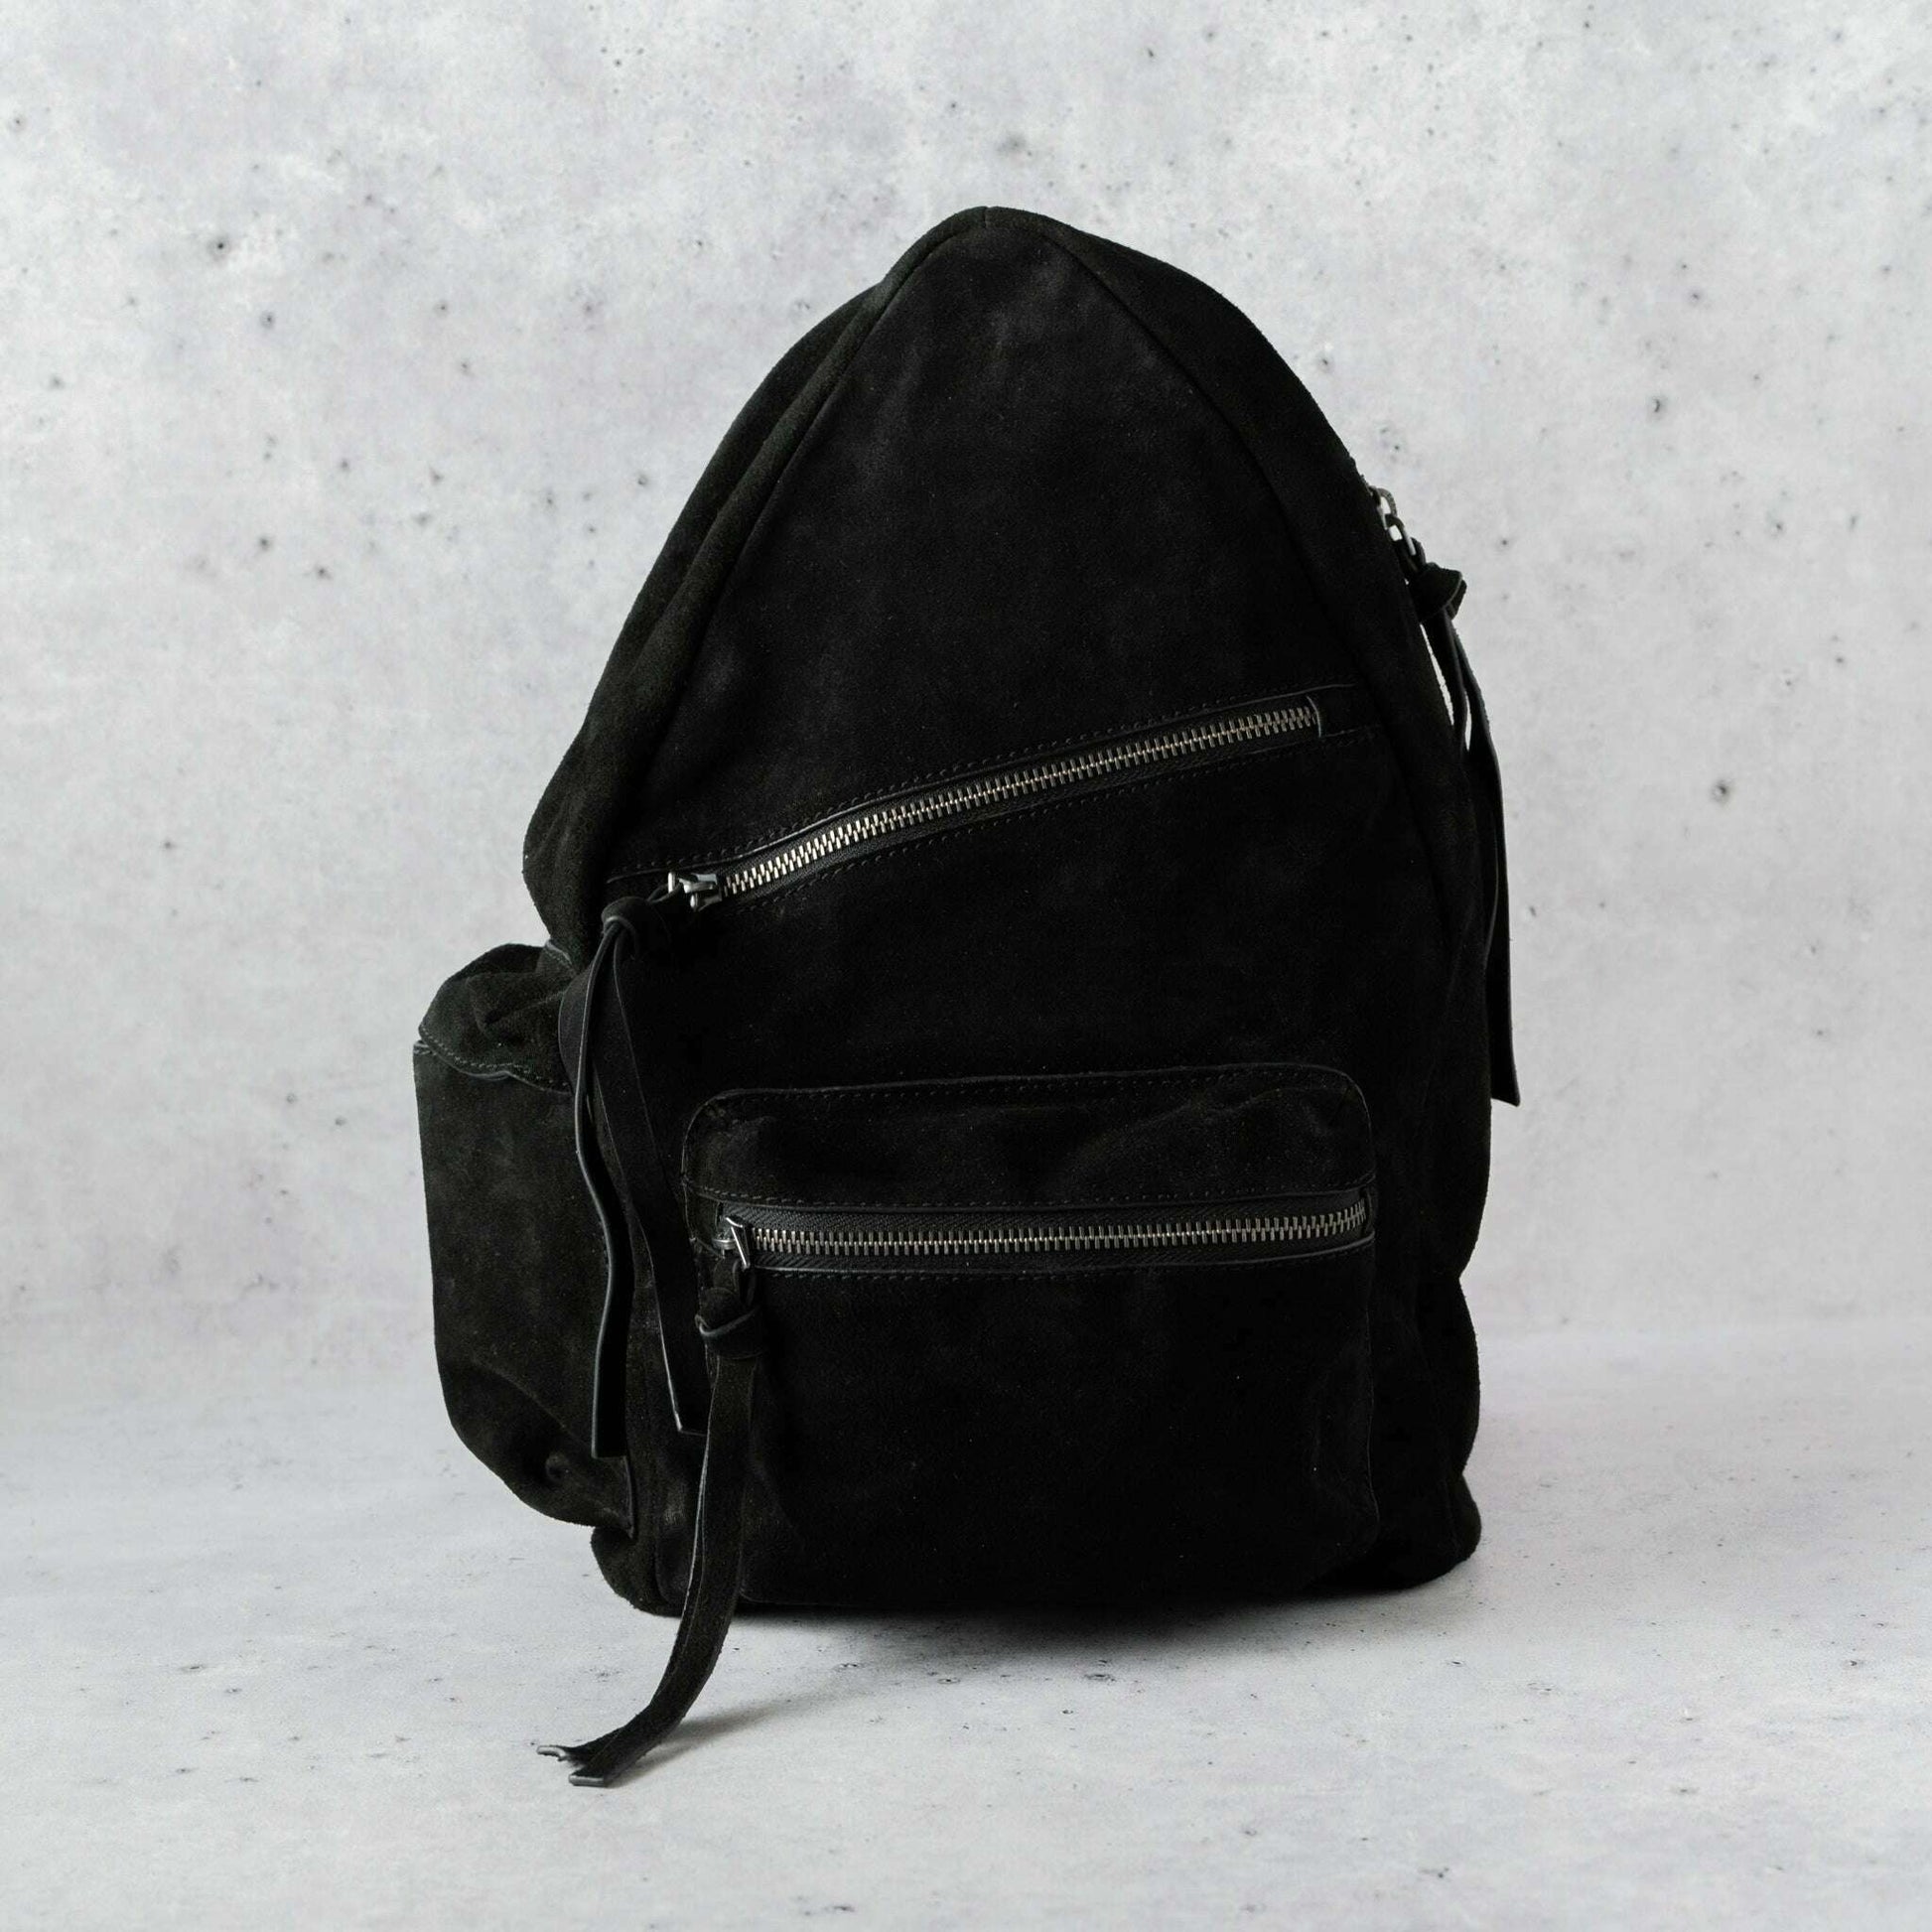 Free People - Oxford Sling Bag - Black Suede, Handbags, Free People, Plum Bottom